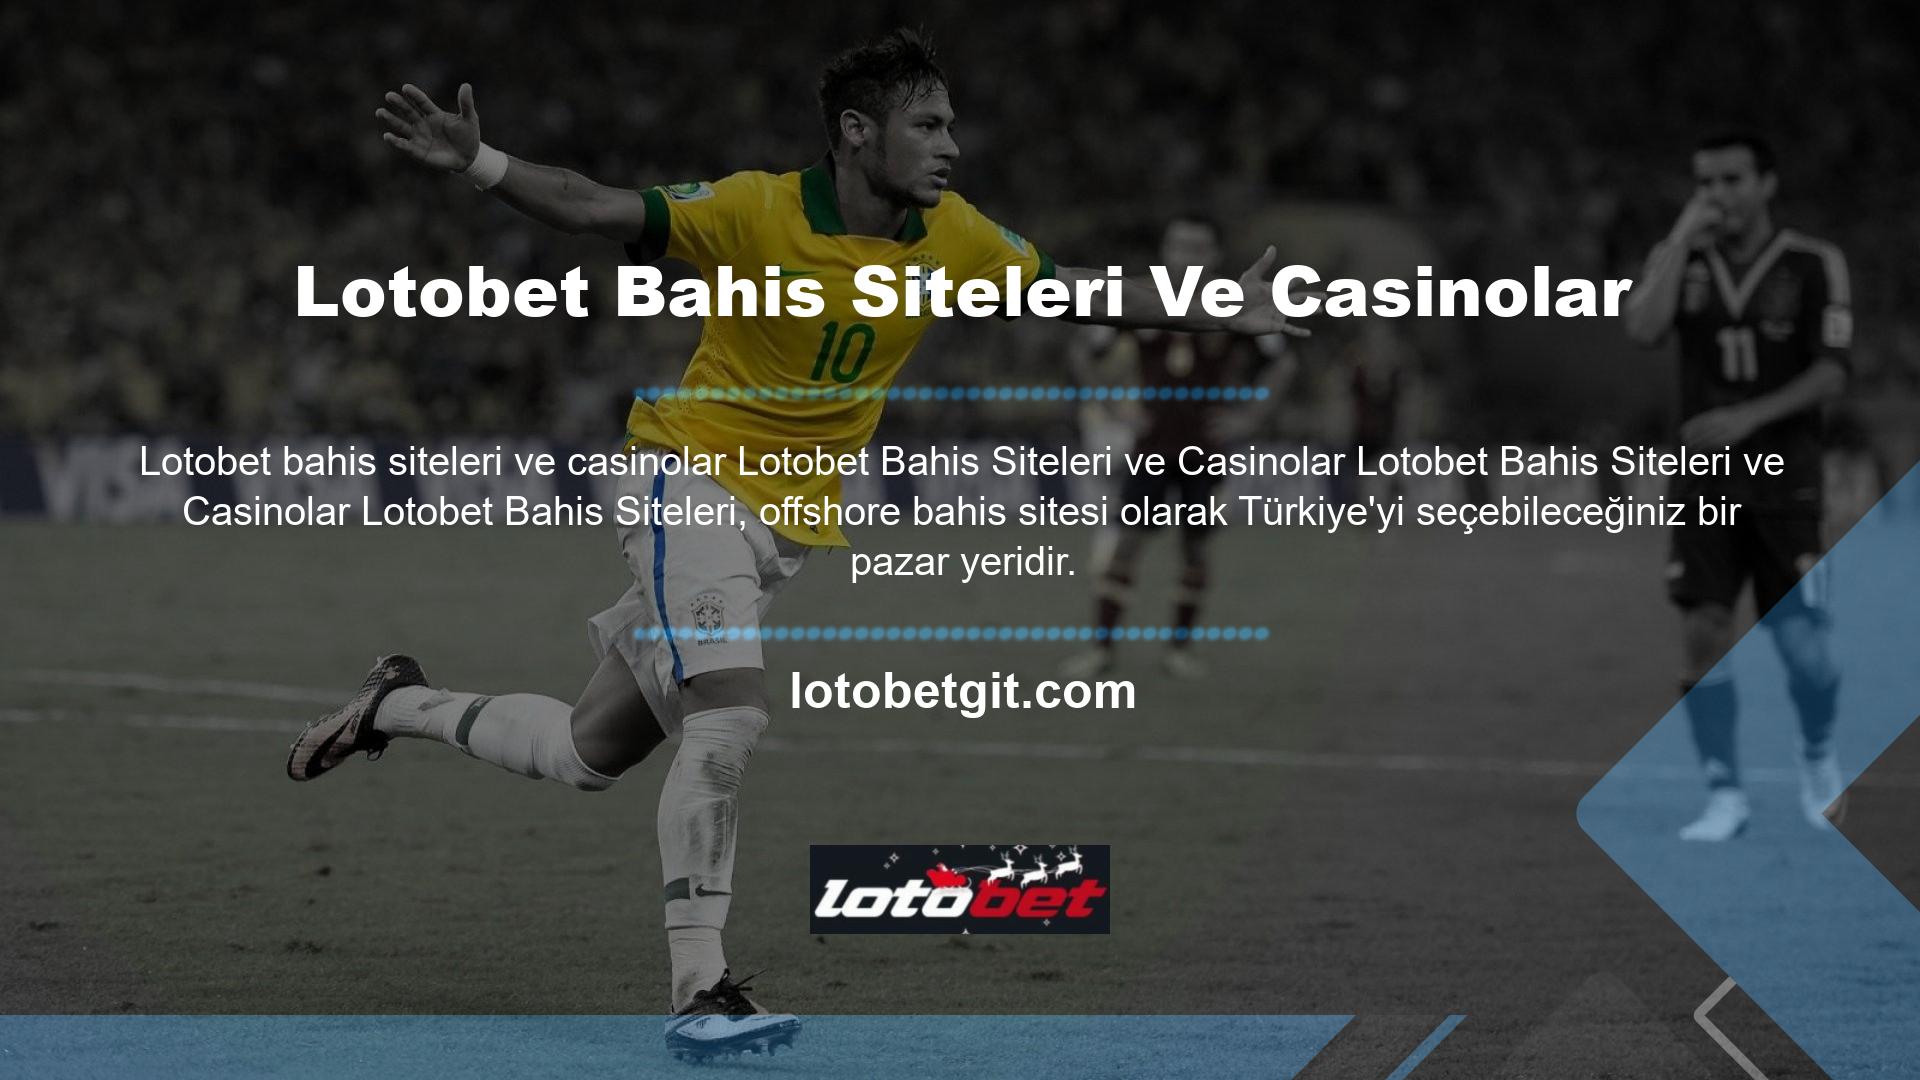 Lotobet Bahis Sitesi ve Casino Lotobet web sitesi, Türkiye pazarında yabancı bir web sitesi olarak kullanılabilir